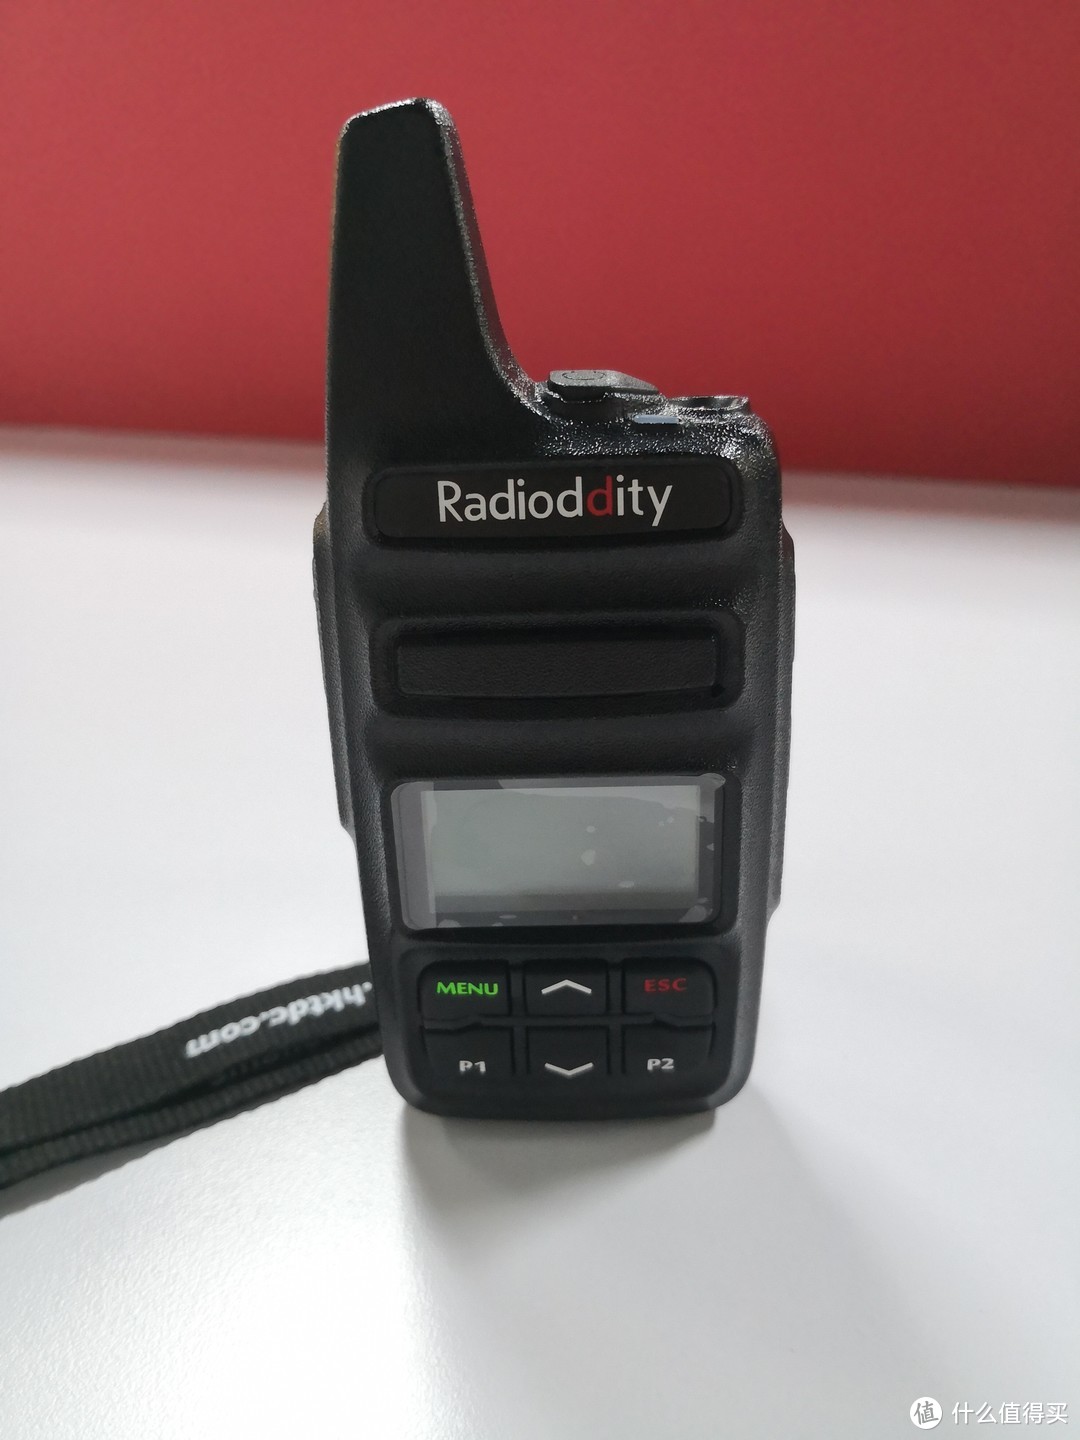 公网对讲机使用测评—Radioddity RN700 插卡对讲机